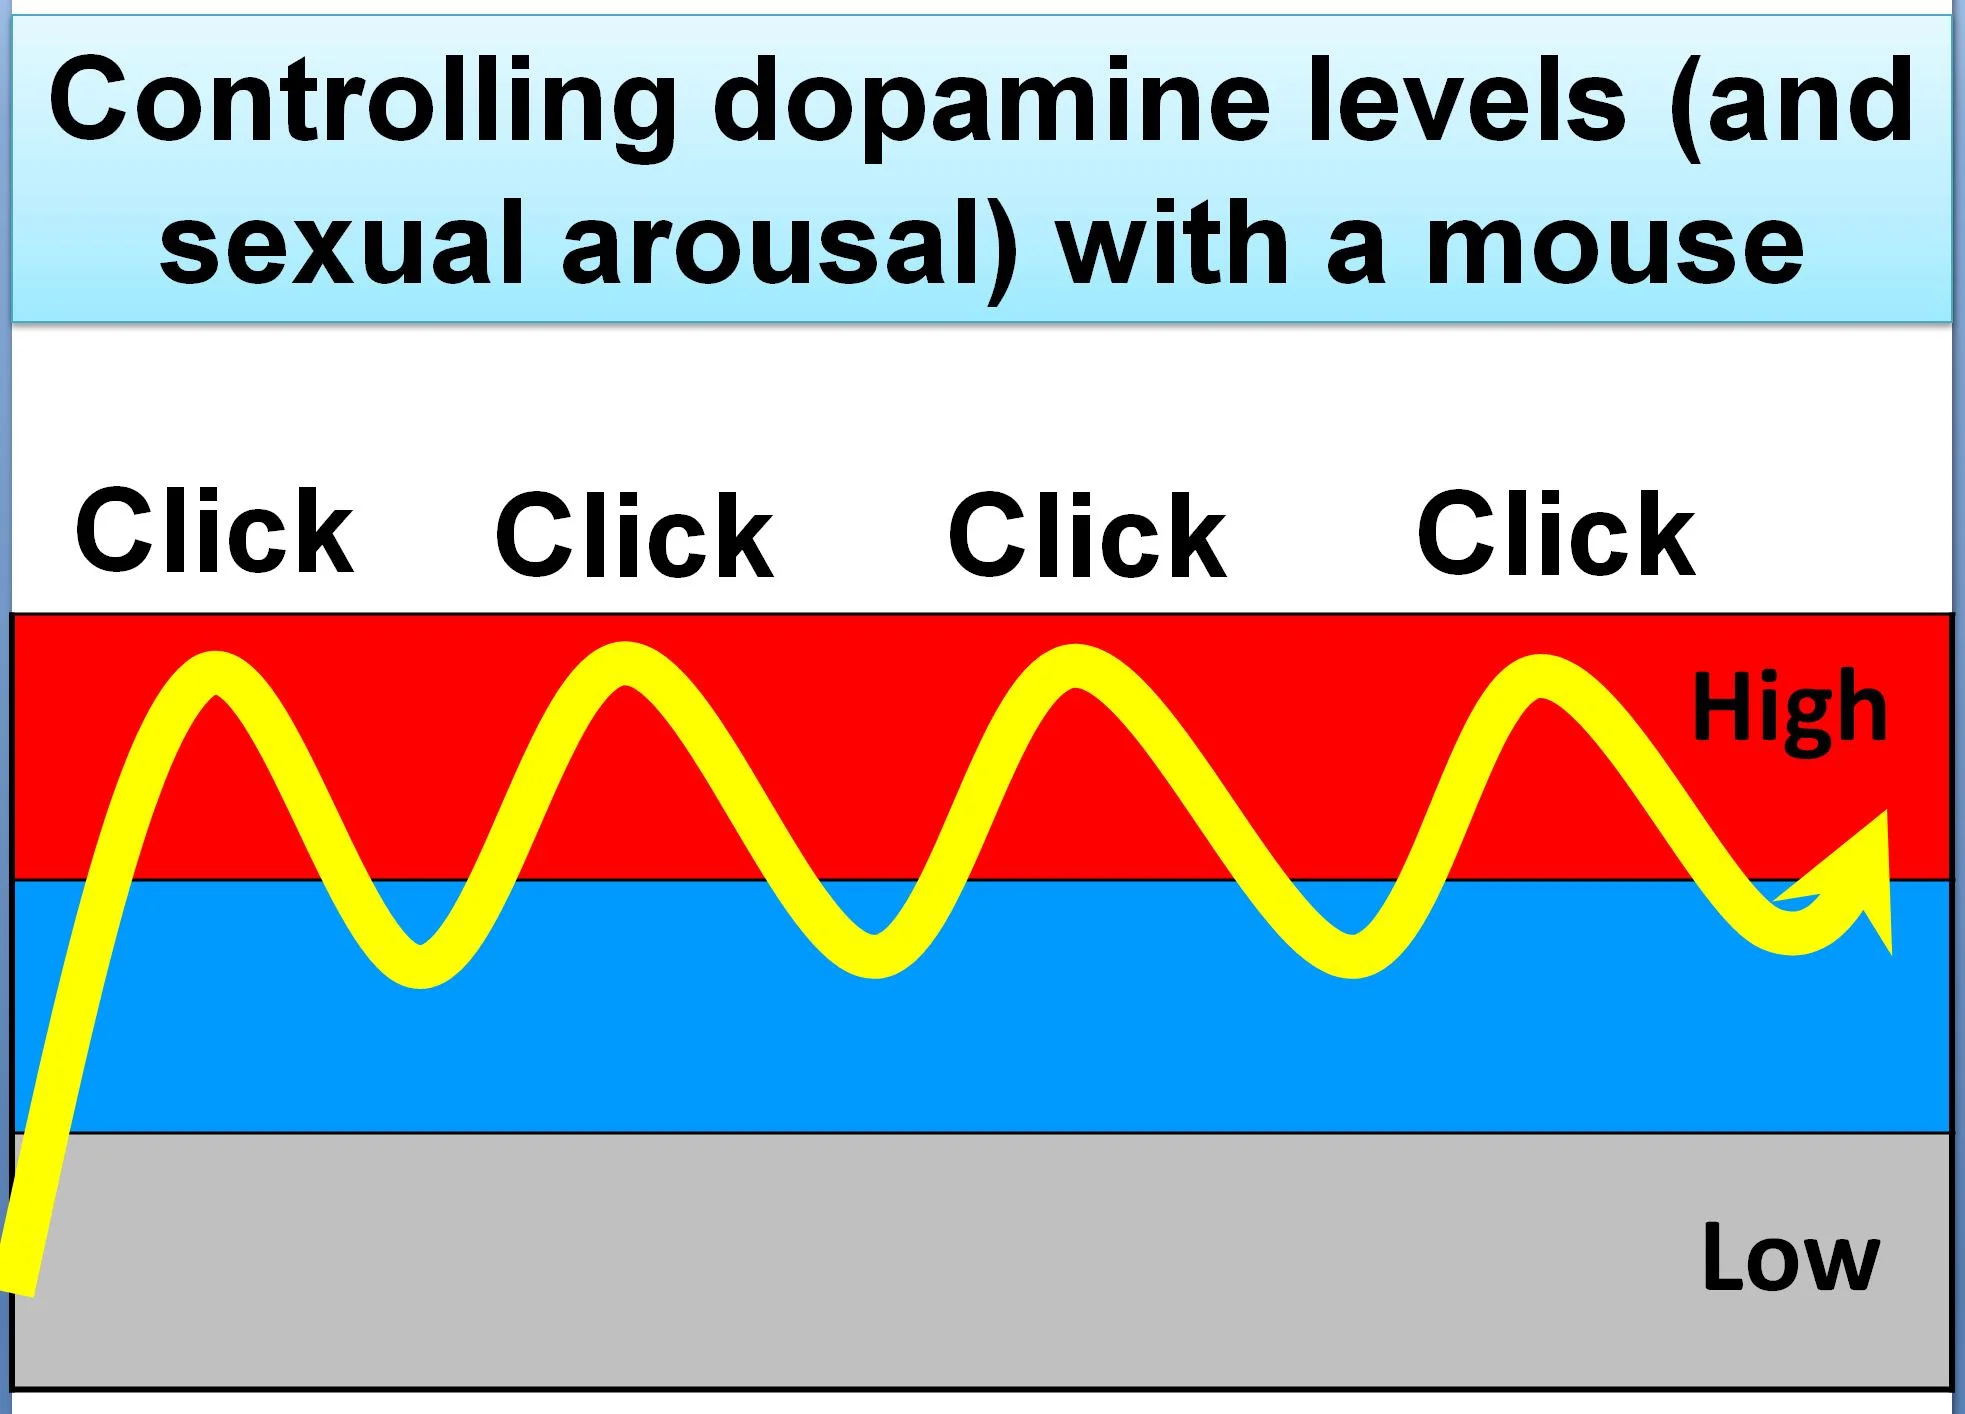 ညစ်ညမ်းရုပ်ပုံများကြည့်ရှုစဉ်အတွင်း dopamine အဆင့်များ (နှင့်လိင်မှုနှိုးဆွမှု) ကိုထိန်းချုပ်ခြင်း၊